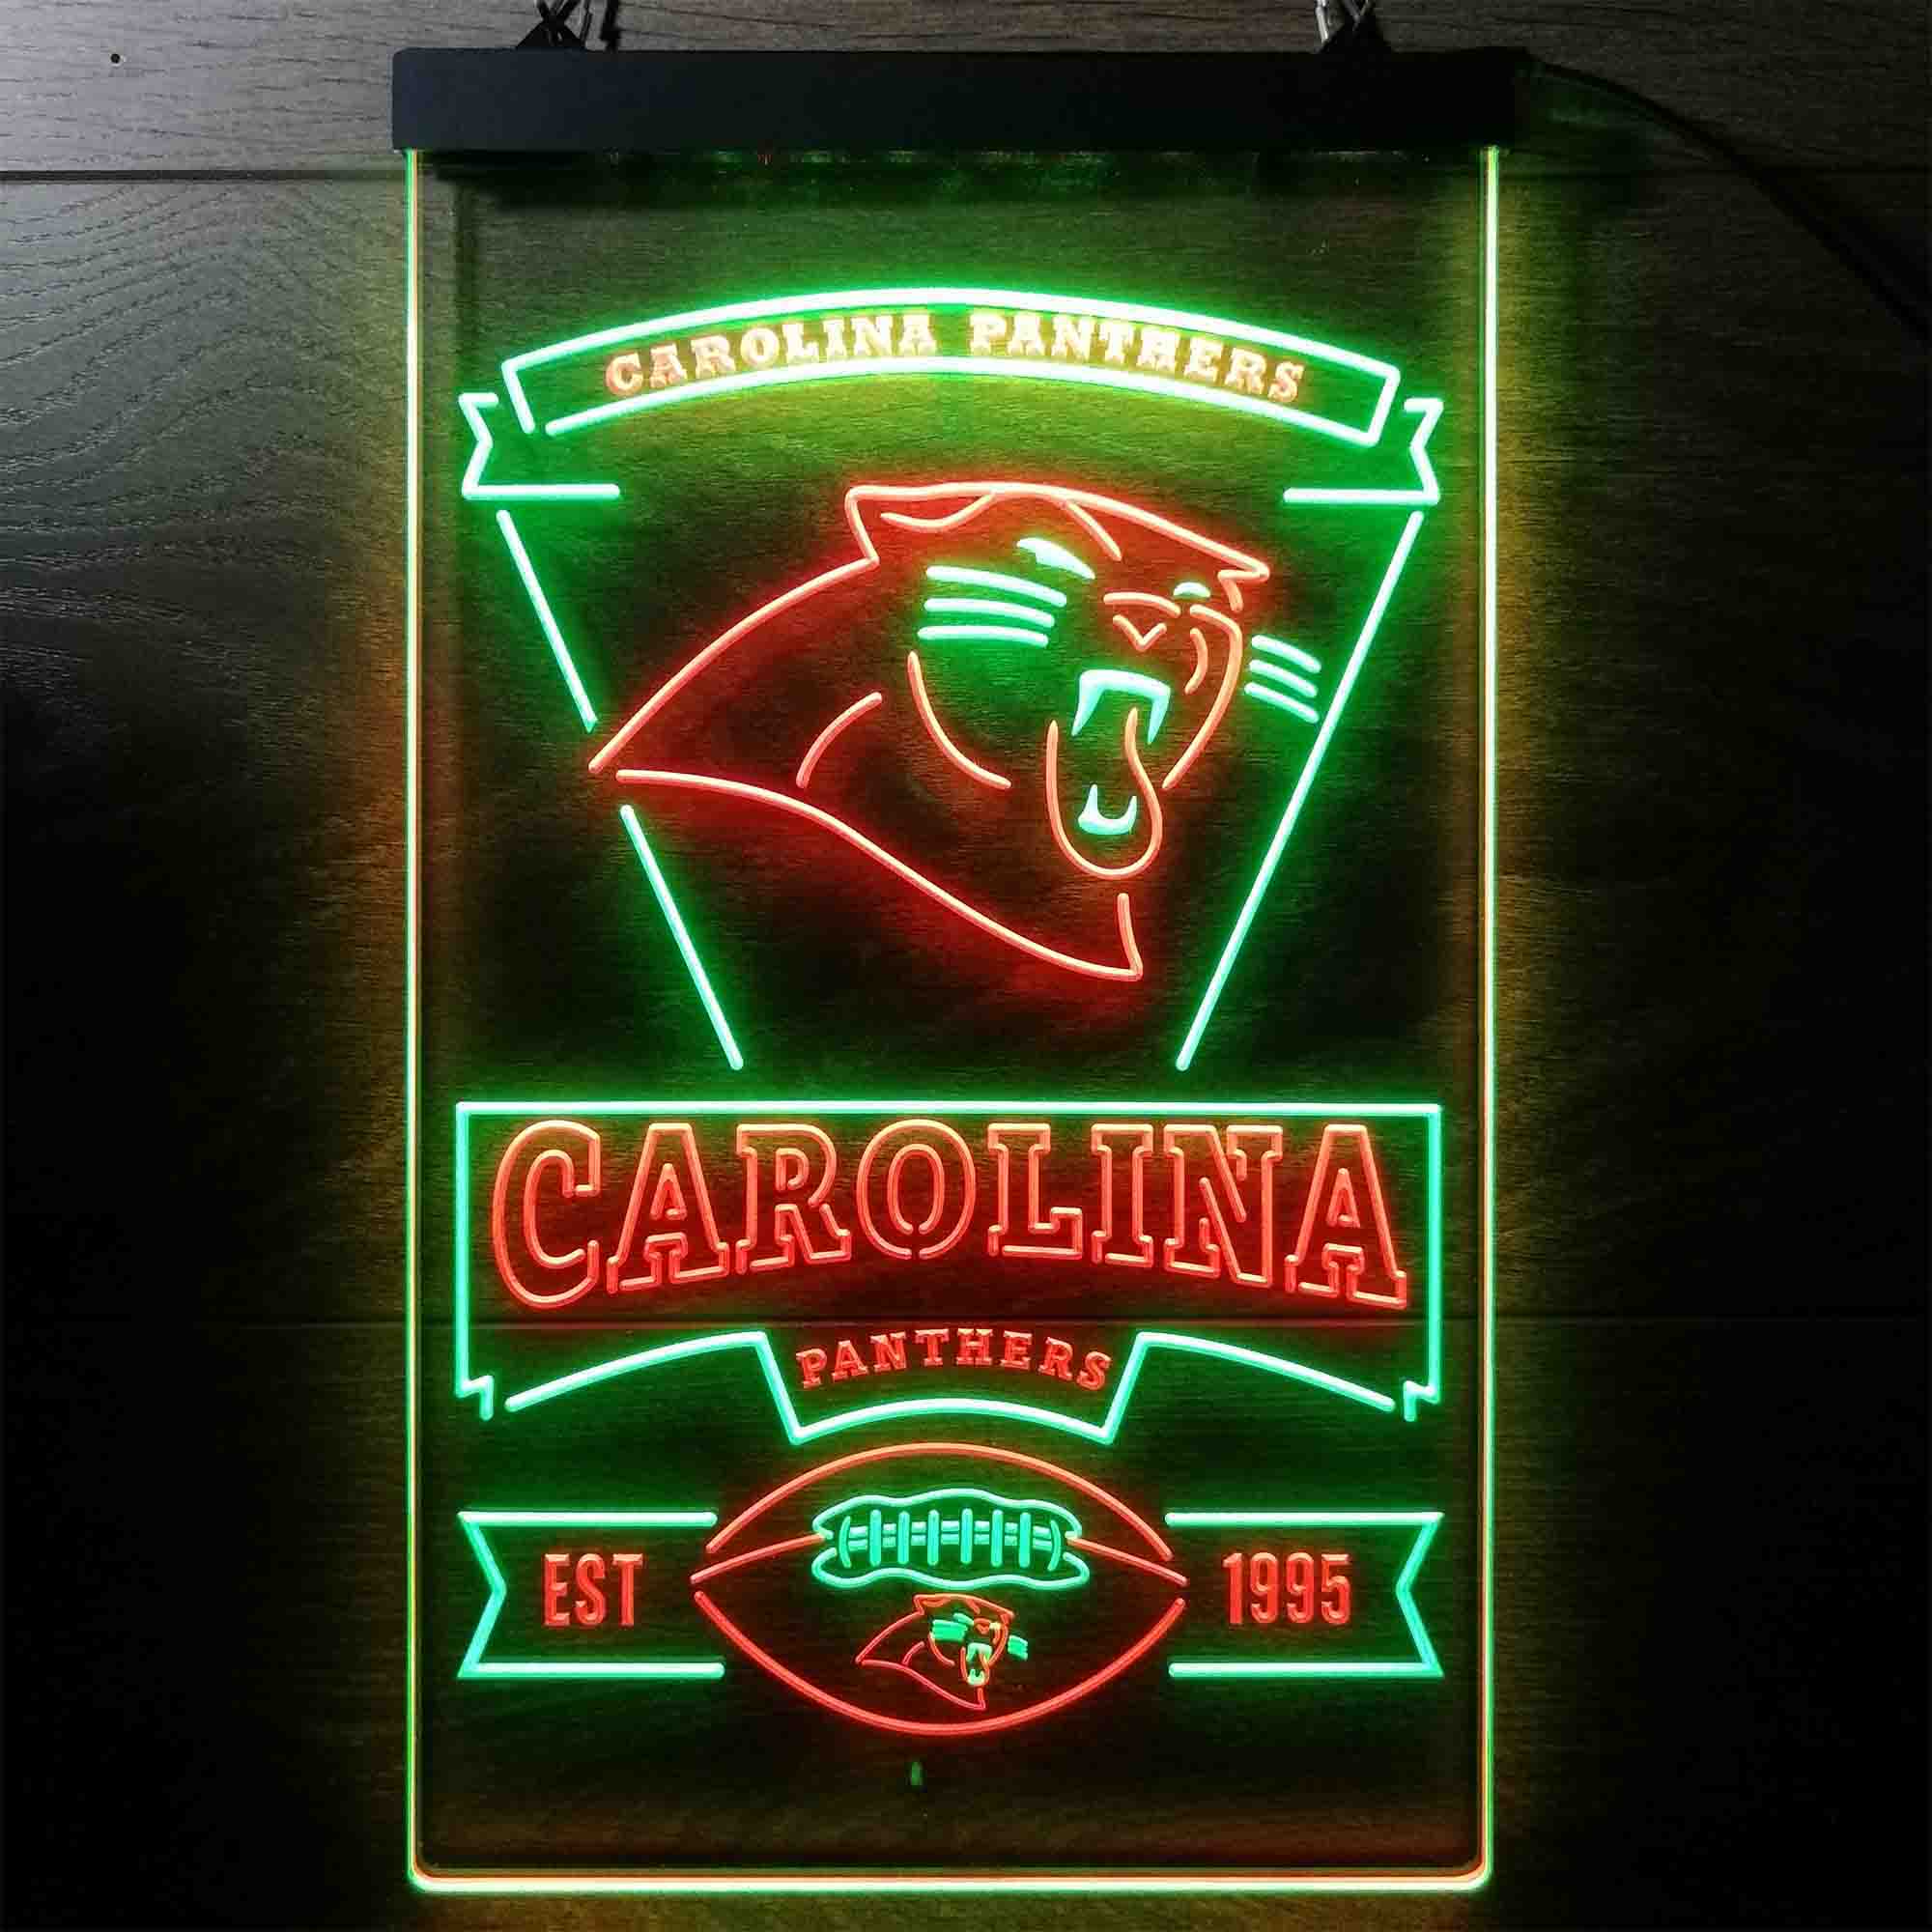 Carolina Panthers Est. 1995 Neon-Like LED Sign